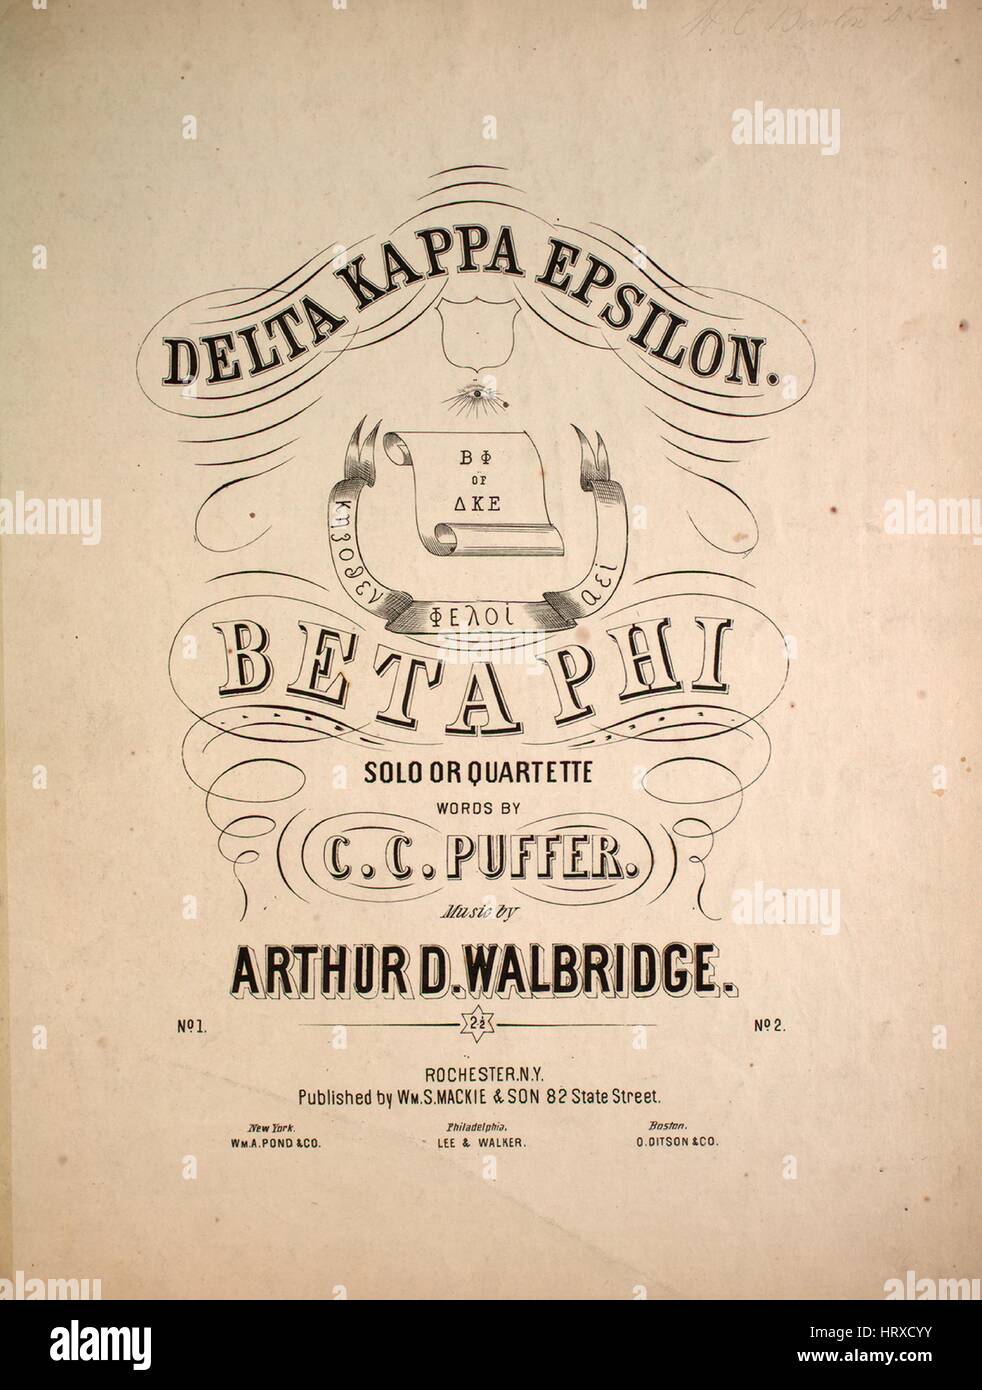 Imagen de cubierta de partituras de la canción "Delta Kappa Epsilon Solo o  Quartette', con notas de autoría original leyendo 'palabras por CC Puffer  música por Arthur D Walbridge', de 1900. El